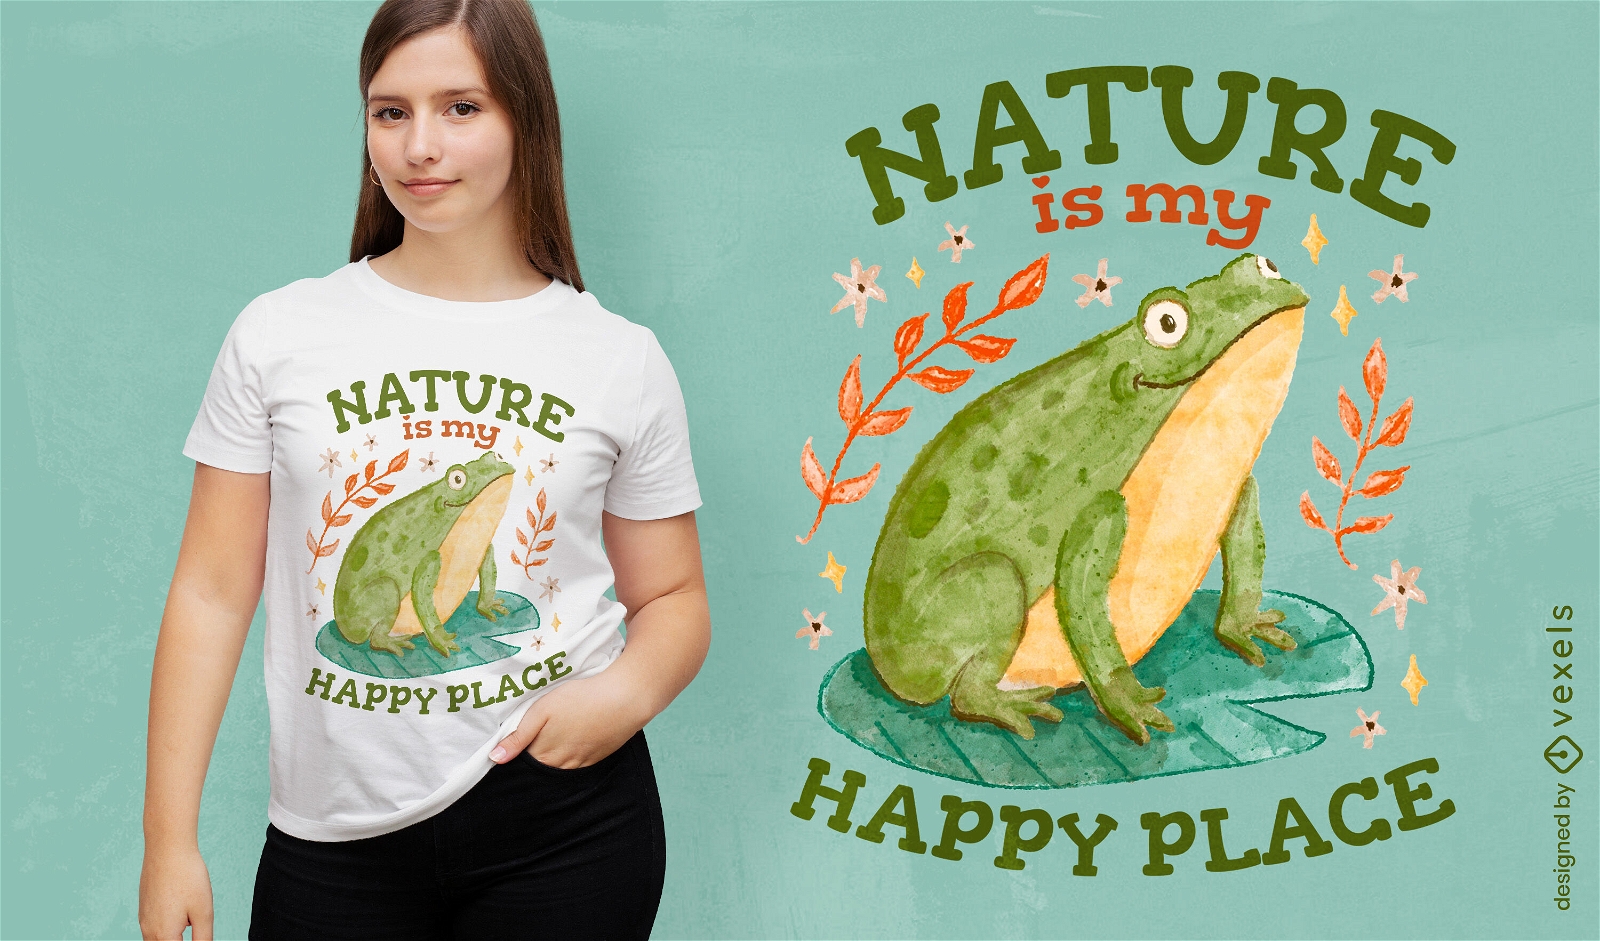 Design de camiseta do santuário natural do sapo verde